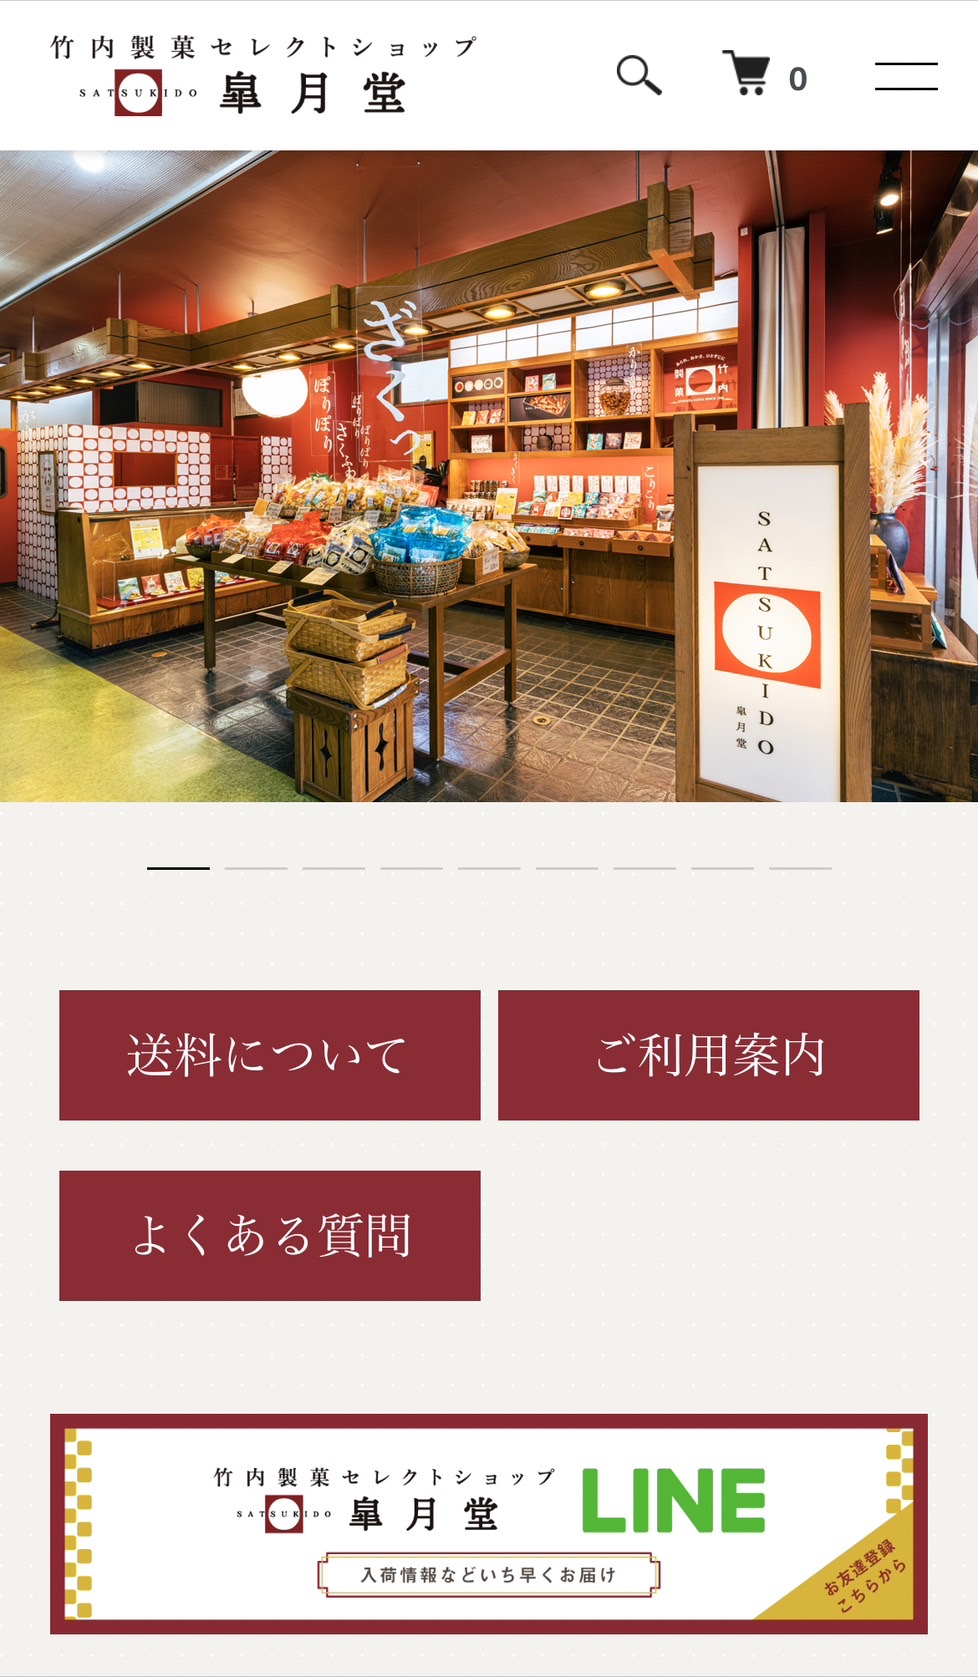 竹内製菓セレクトショップ皐月堂ECサイトをリニューアルいたしました。